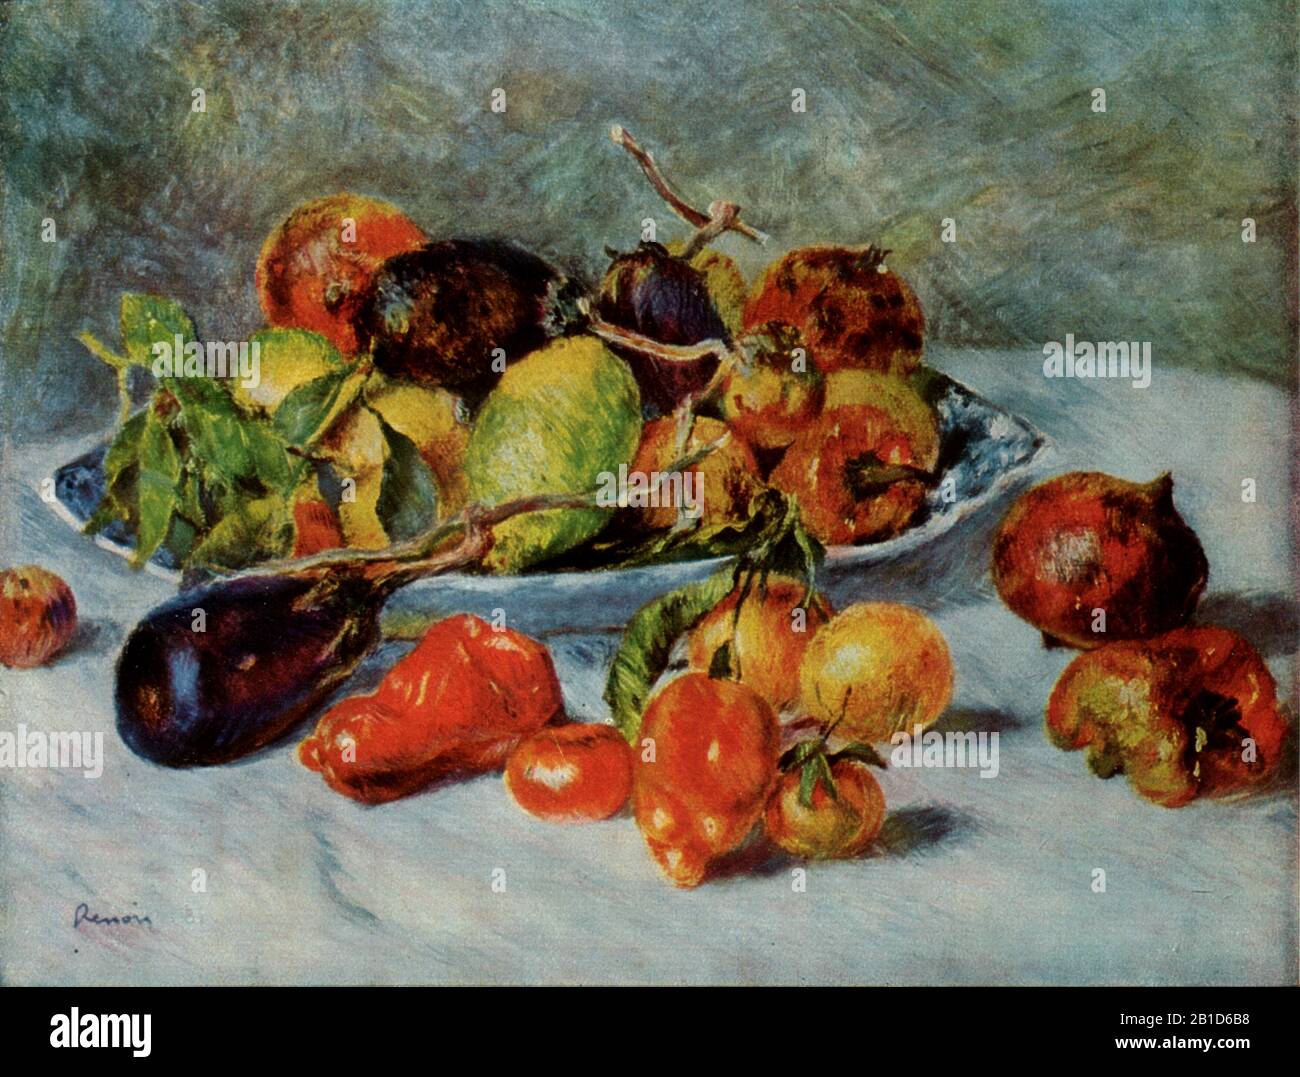 Still Life with Mediterranean Fruit (1911) - début du XXe siècle Peinture de Pierre-Auguste Renoir - Très haute résolution et image de qualité Banque D'Images